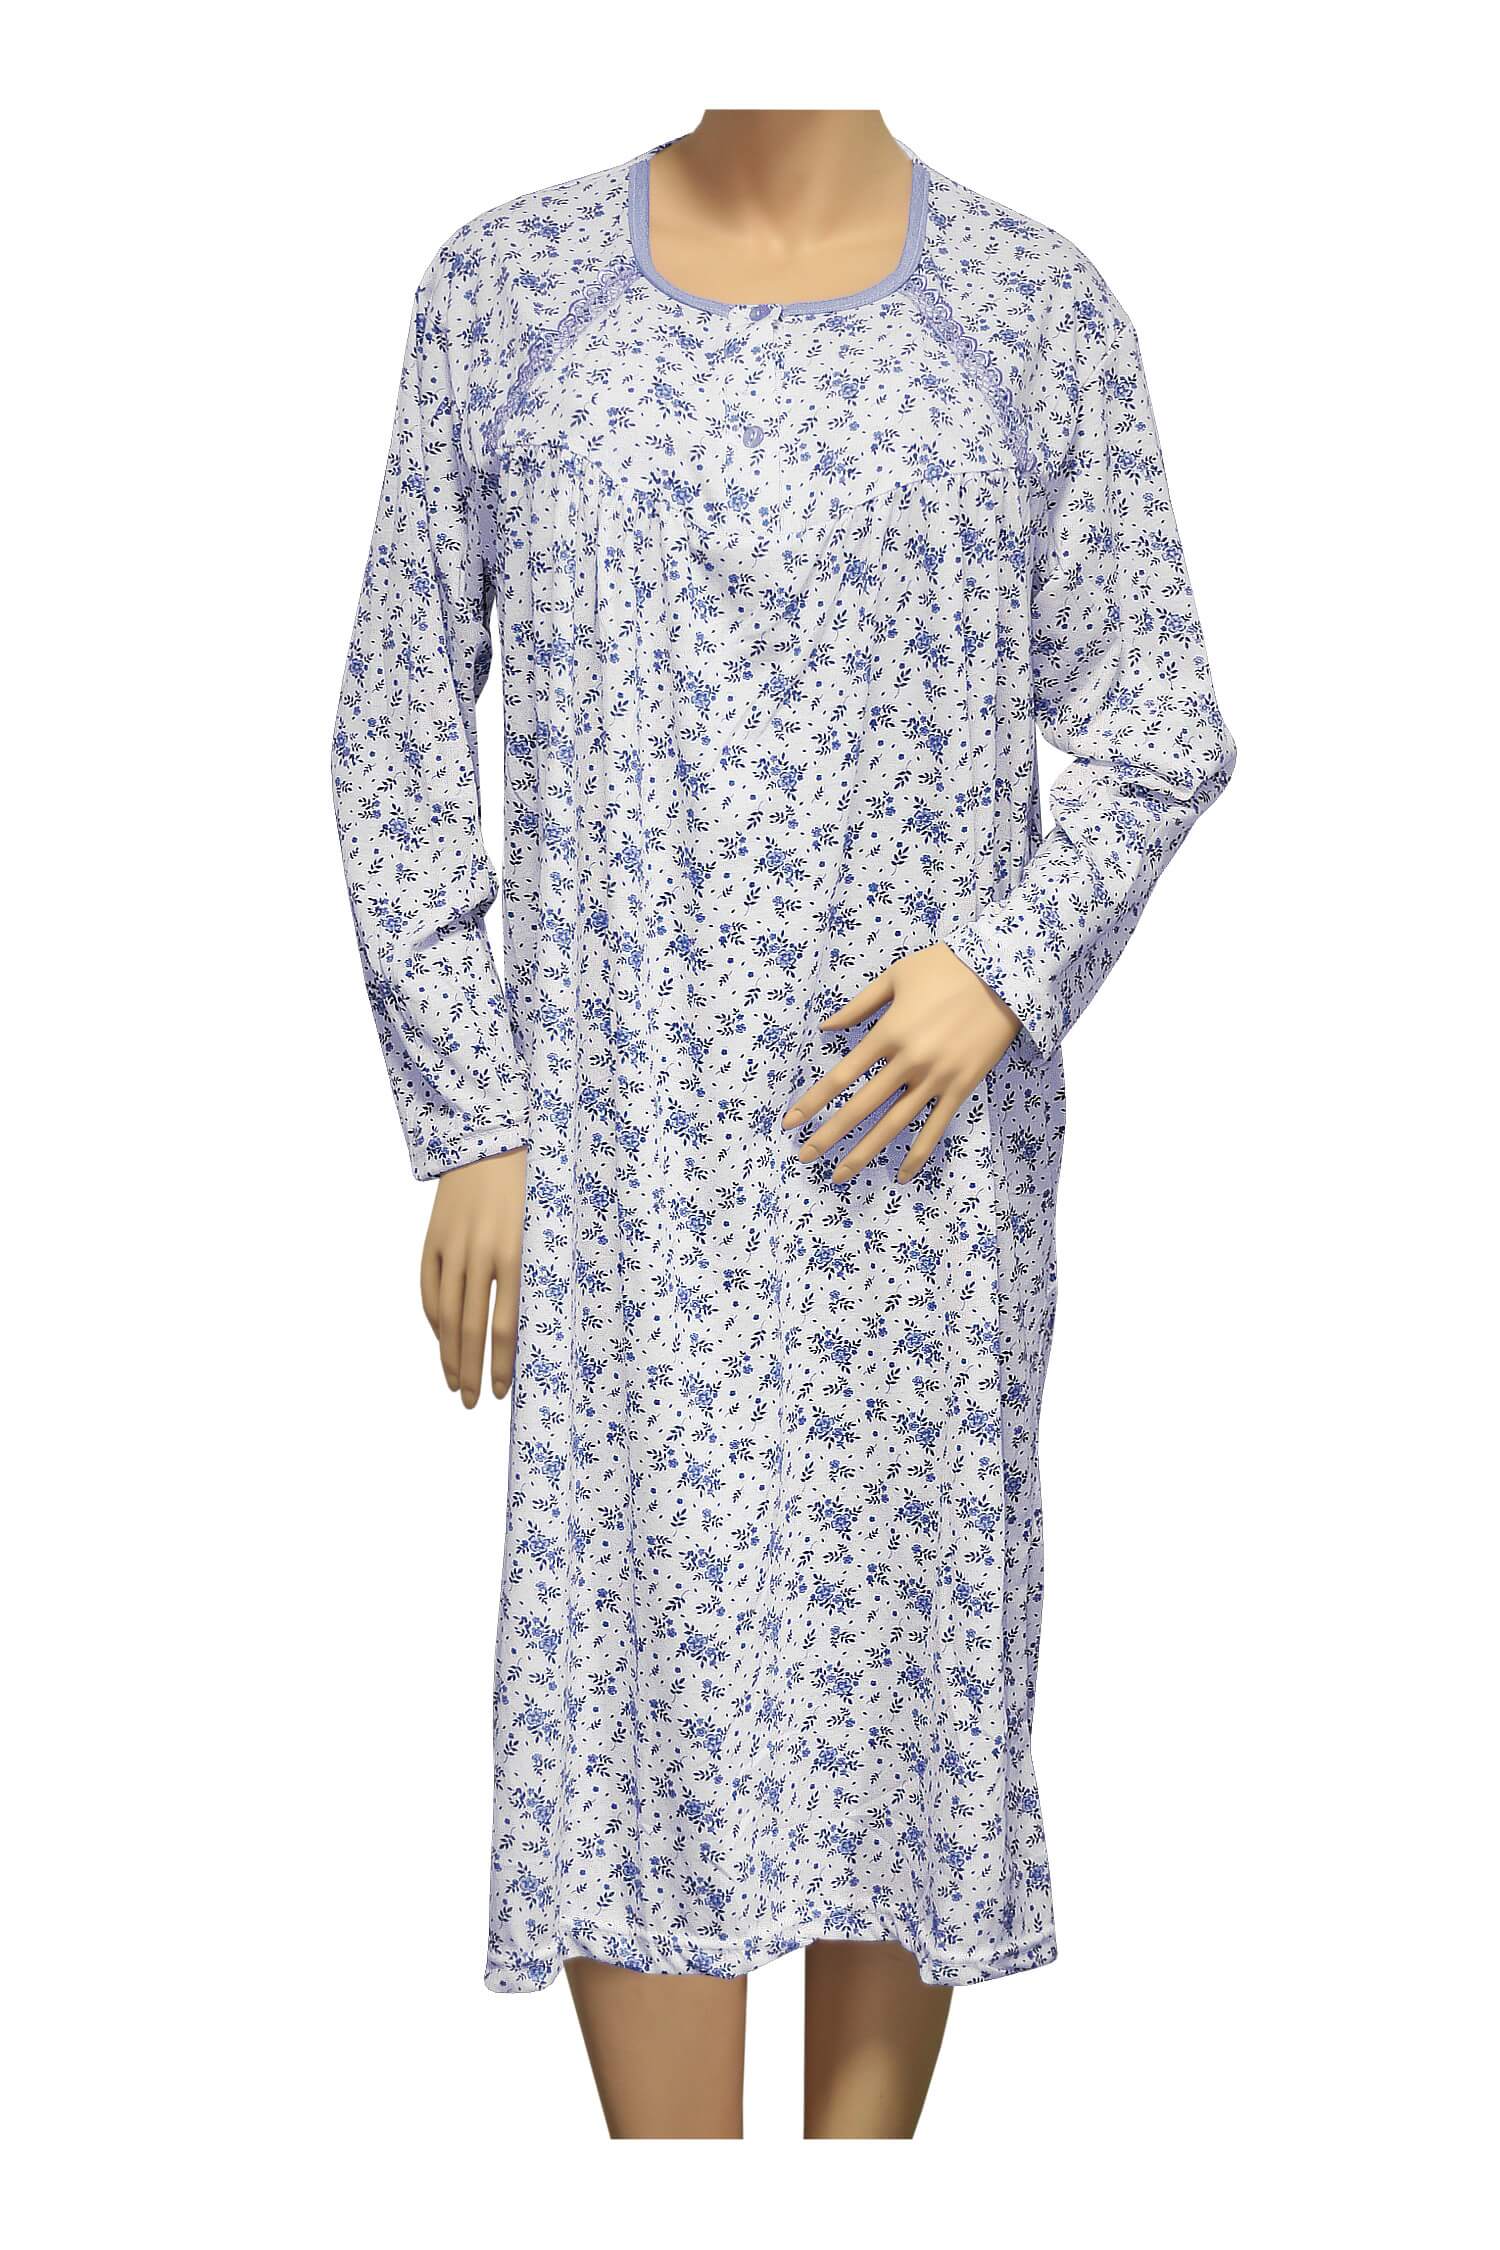 Karina dámská noční košile 1008 XL modrá